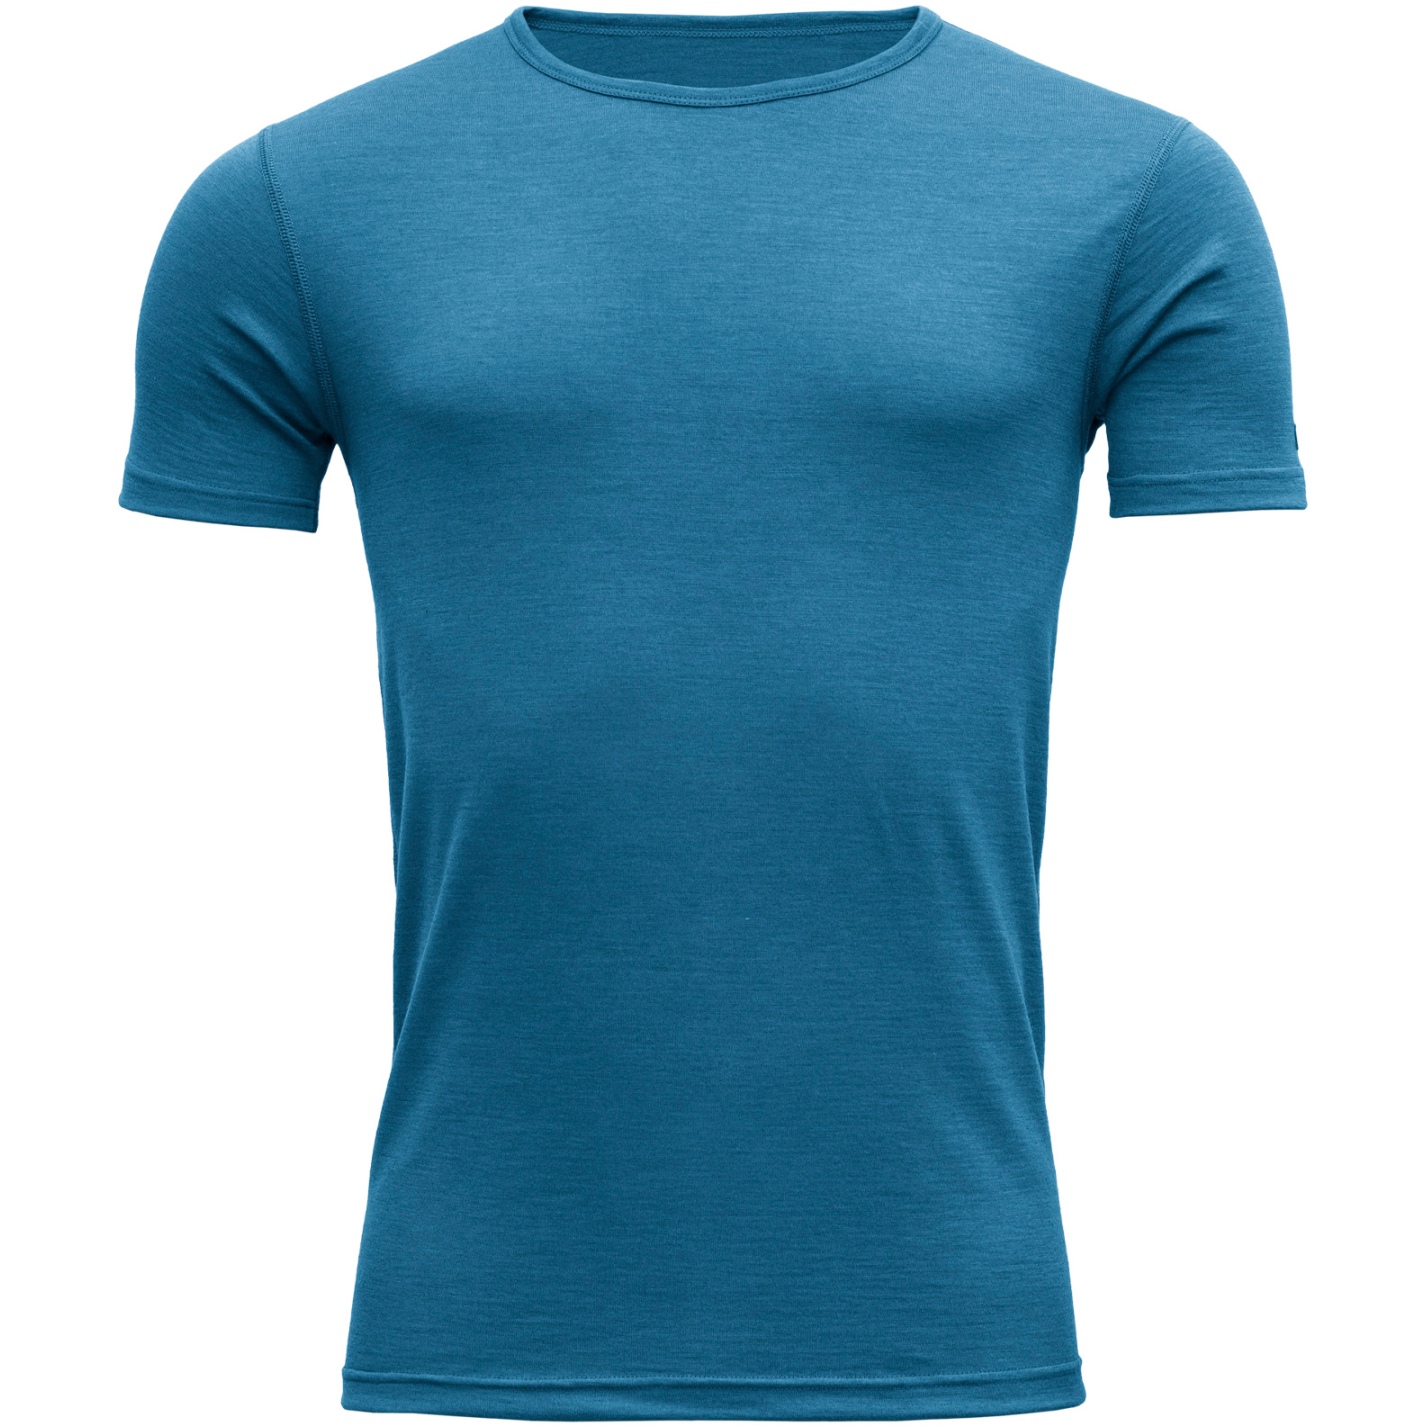 Productfoto van Devold Breeze Merino 150 T-Shirt Heren - 258 Blue Melange